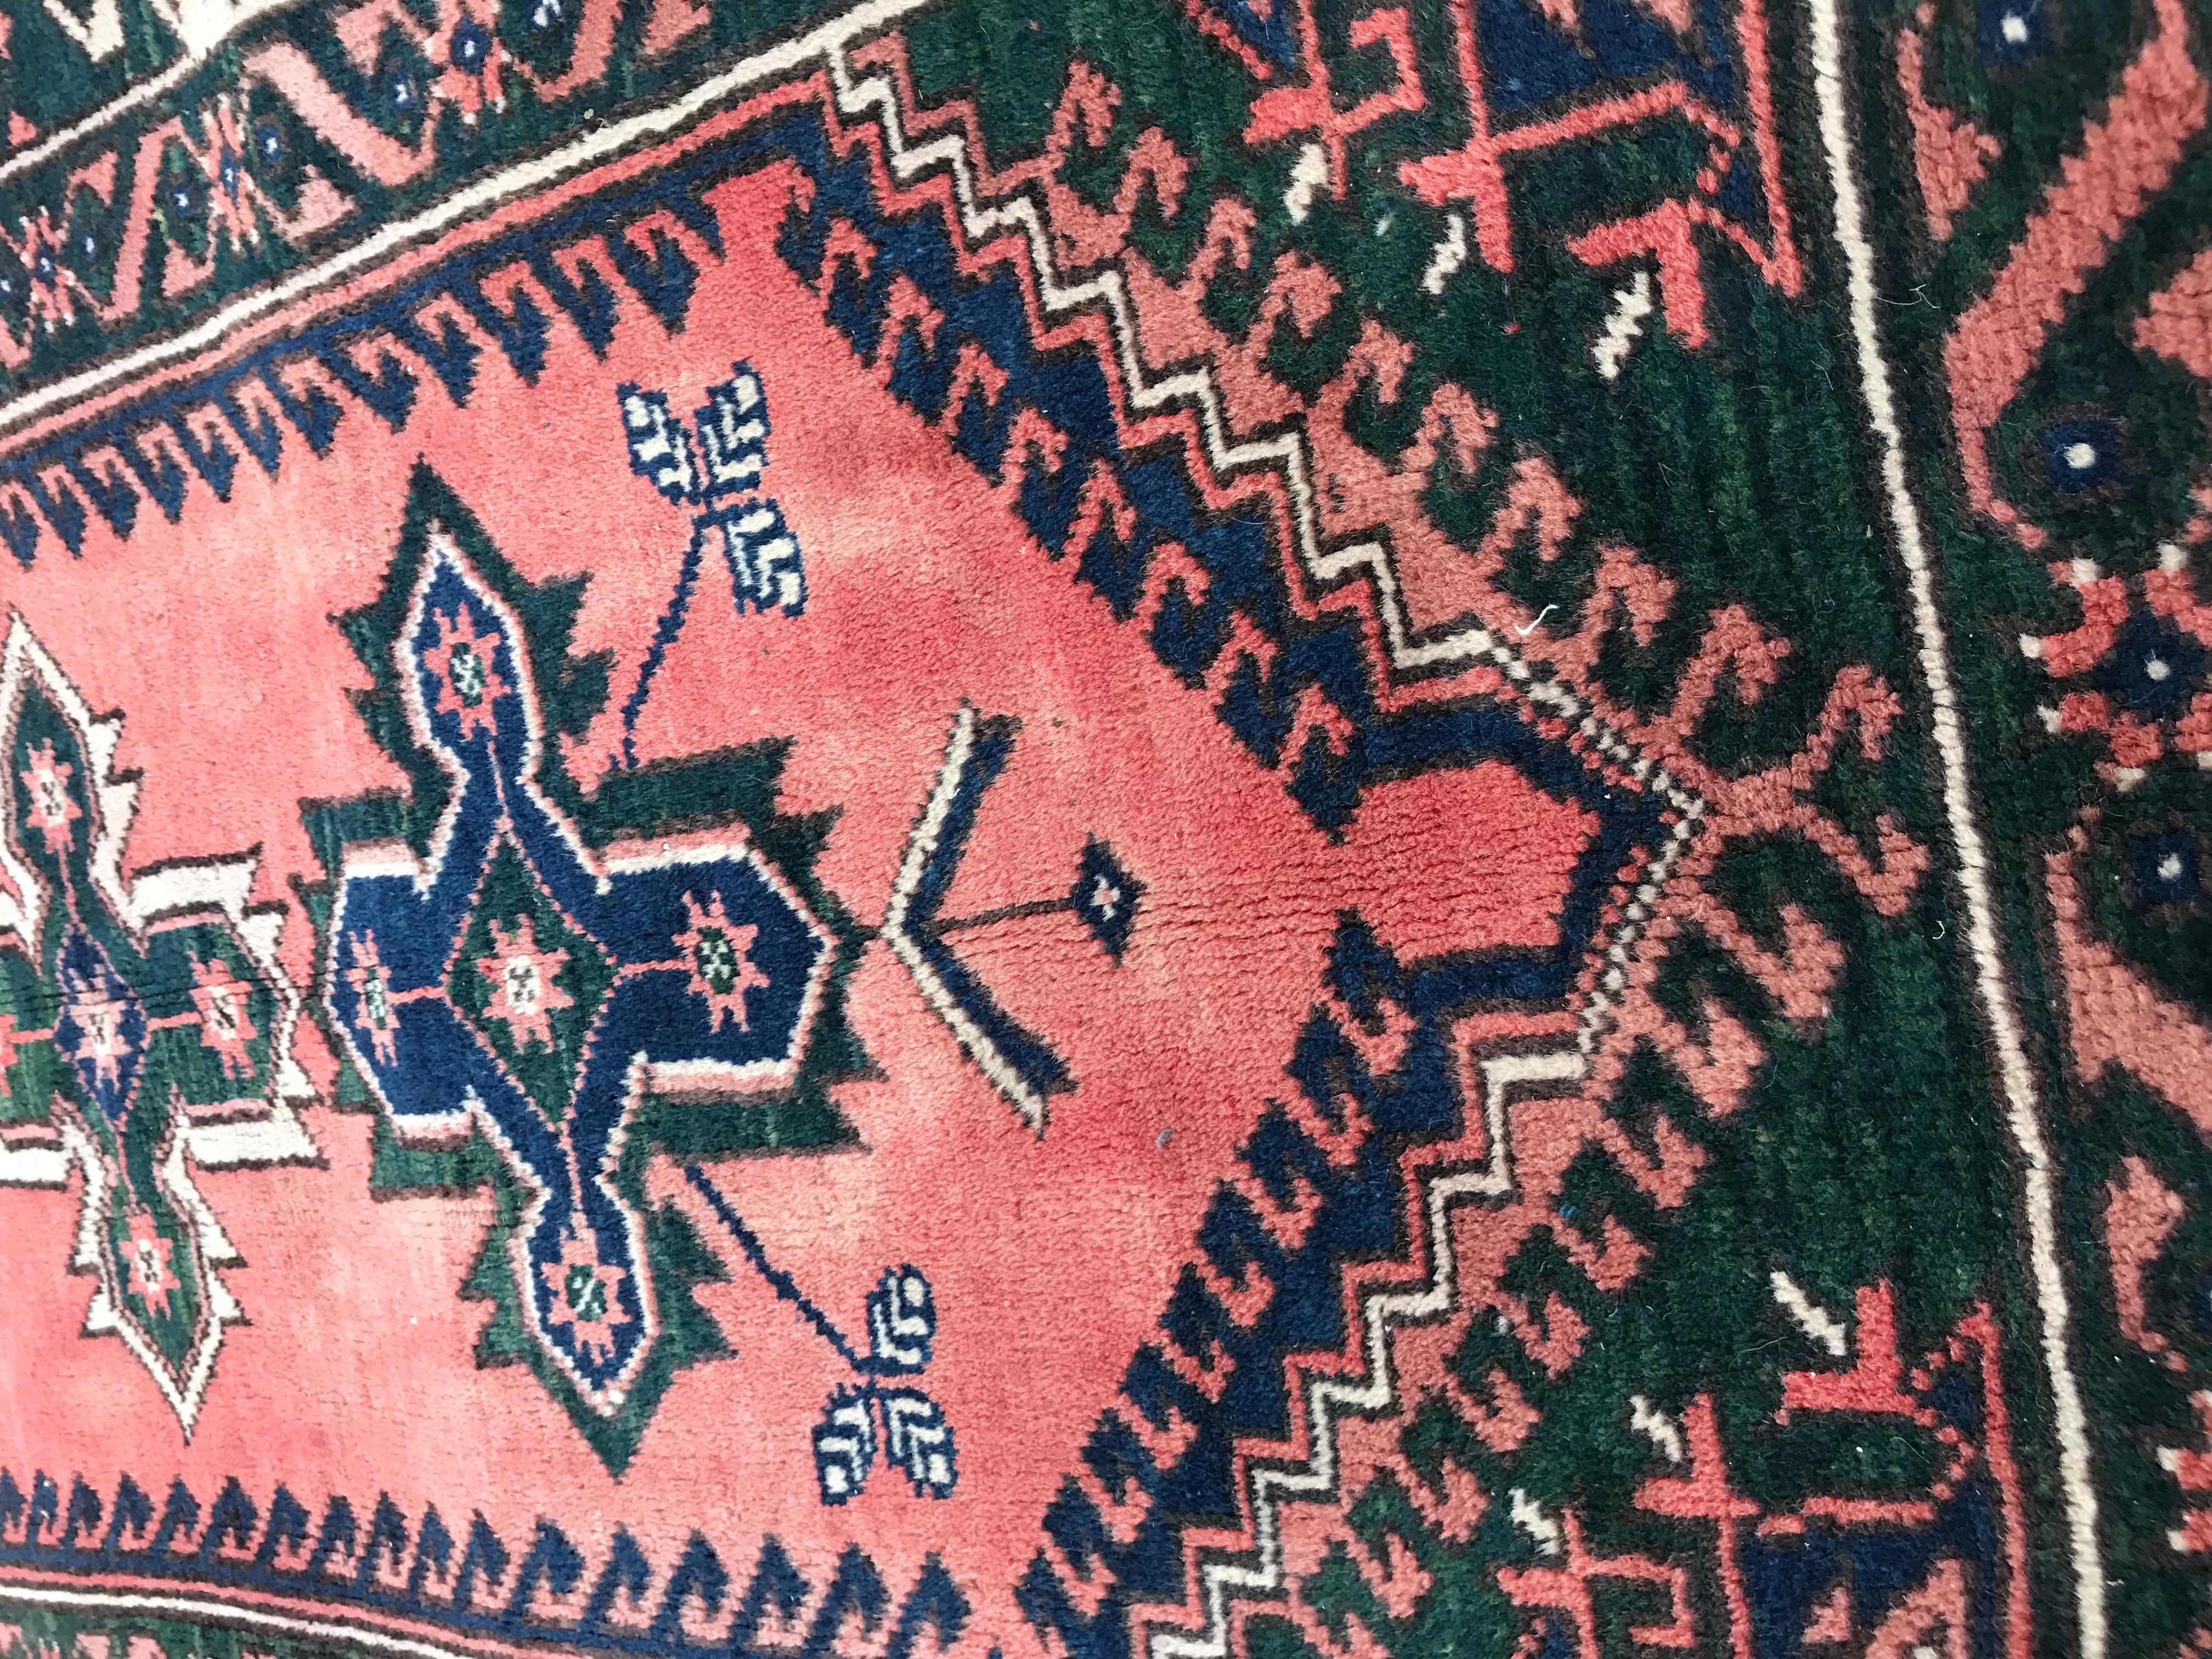 Schöne 20. Jahrhundert anatolischen Teppich Türkei Konya, mit einem geometrischen Design und schöne Farben mit rosa, blau und grün, ganz Hand mit Wolle Samt auf Wolle Fundament geknüpft.

✨✨✨
